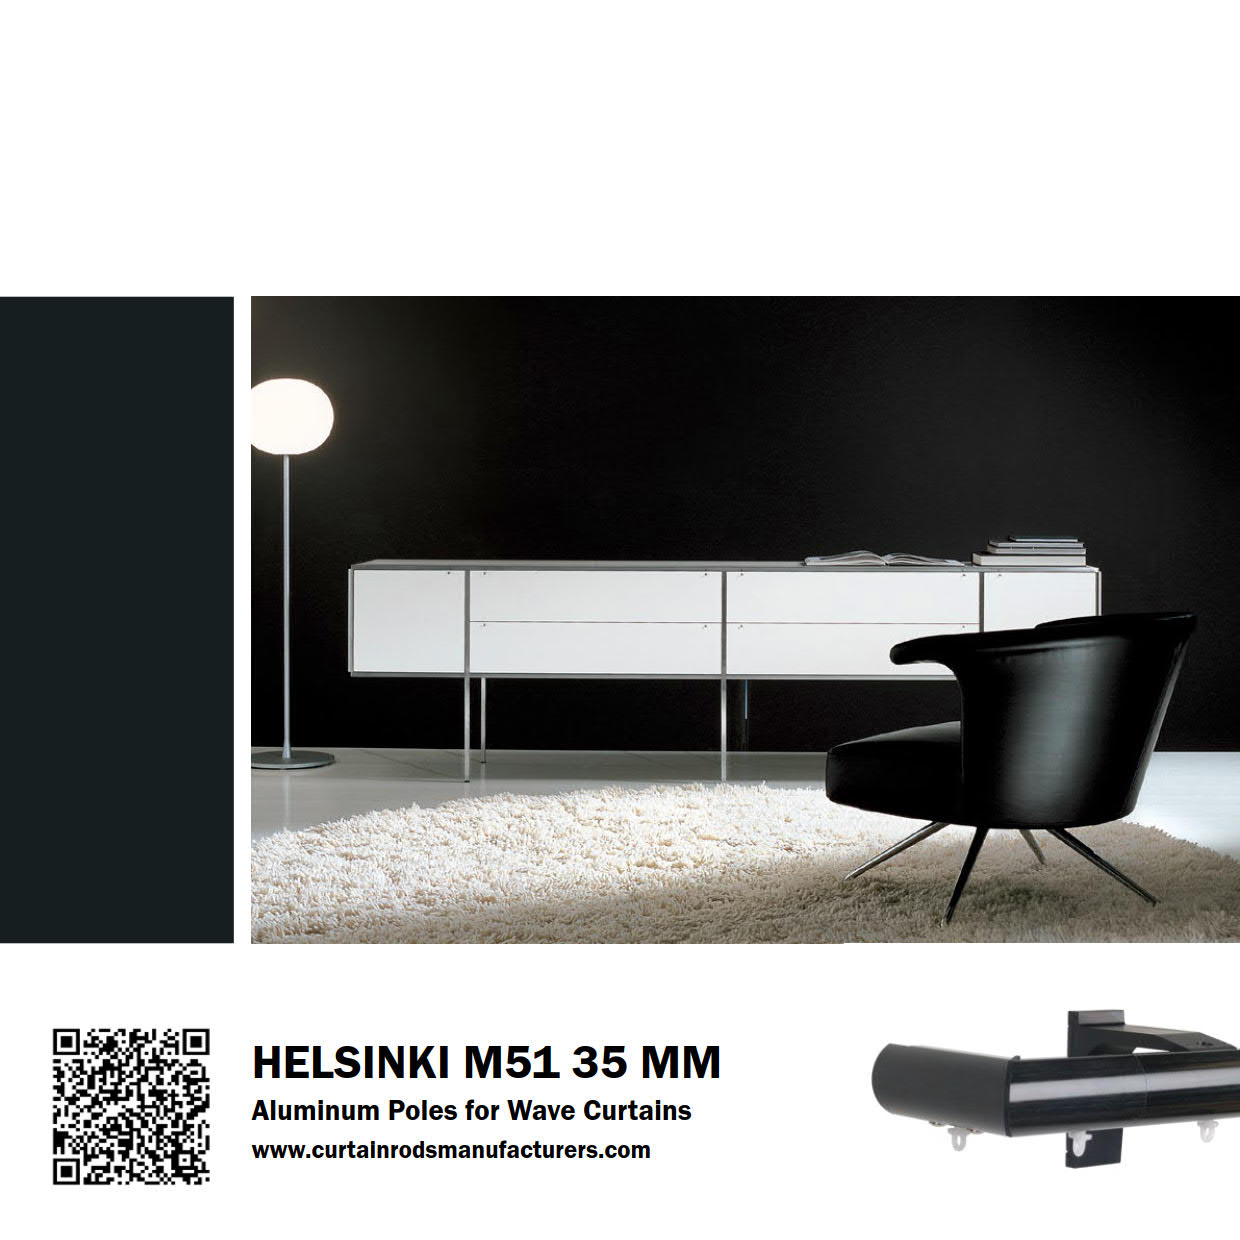 Helsinki M51 35mm